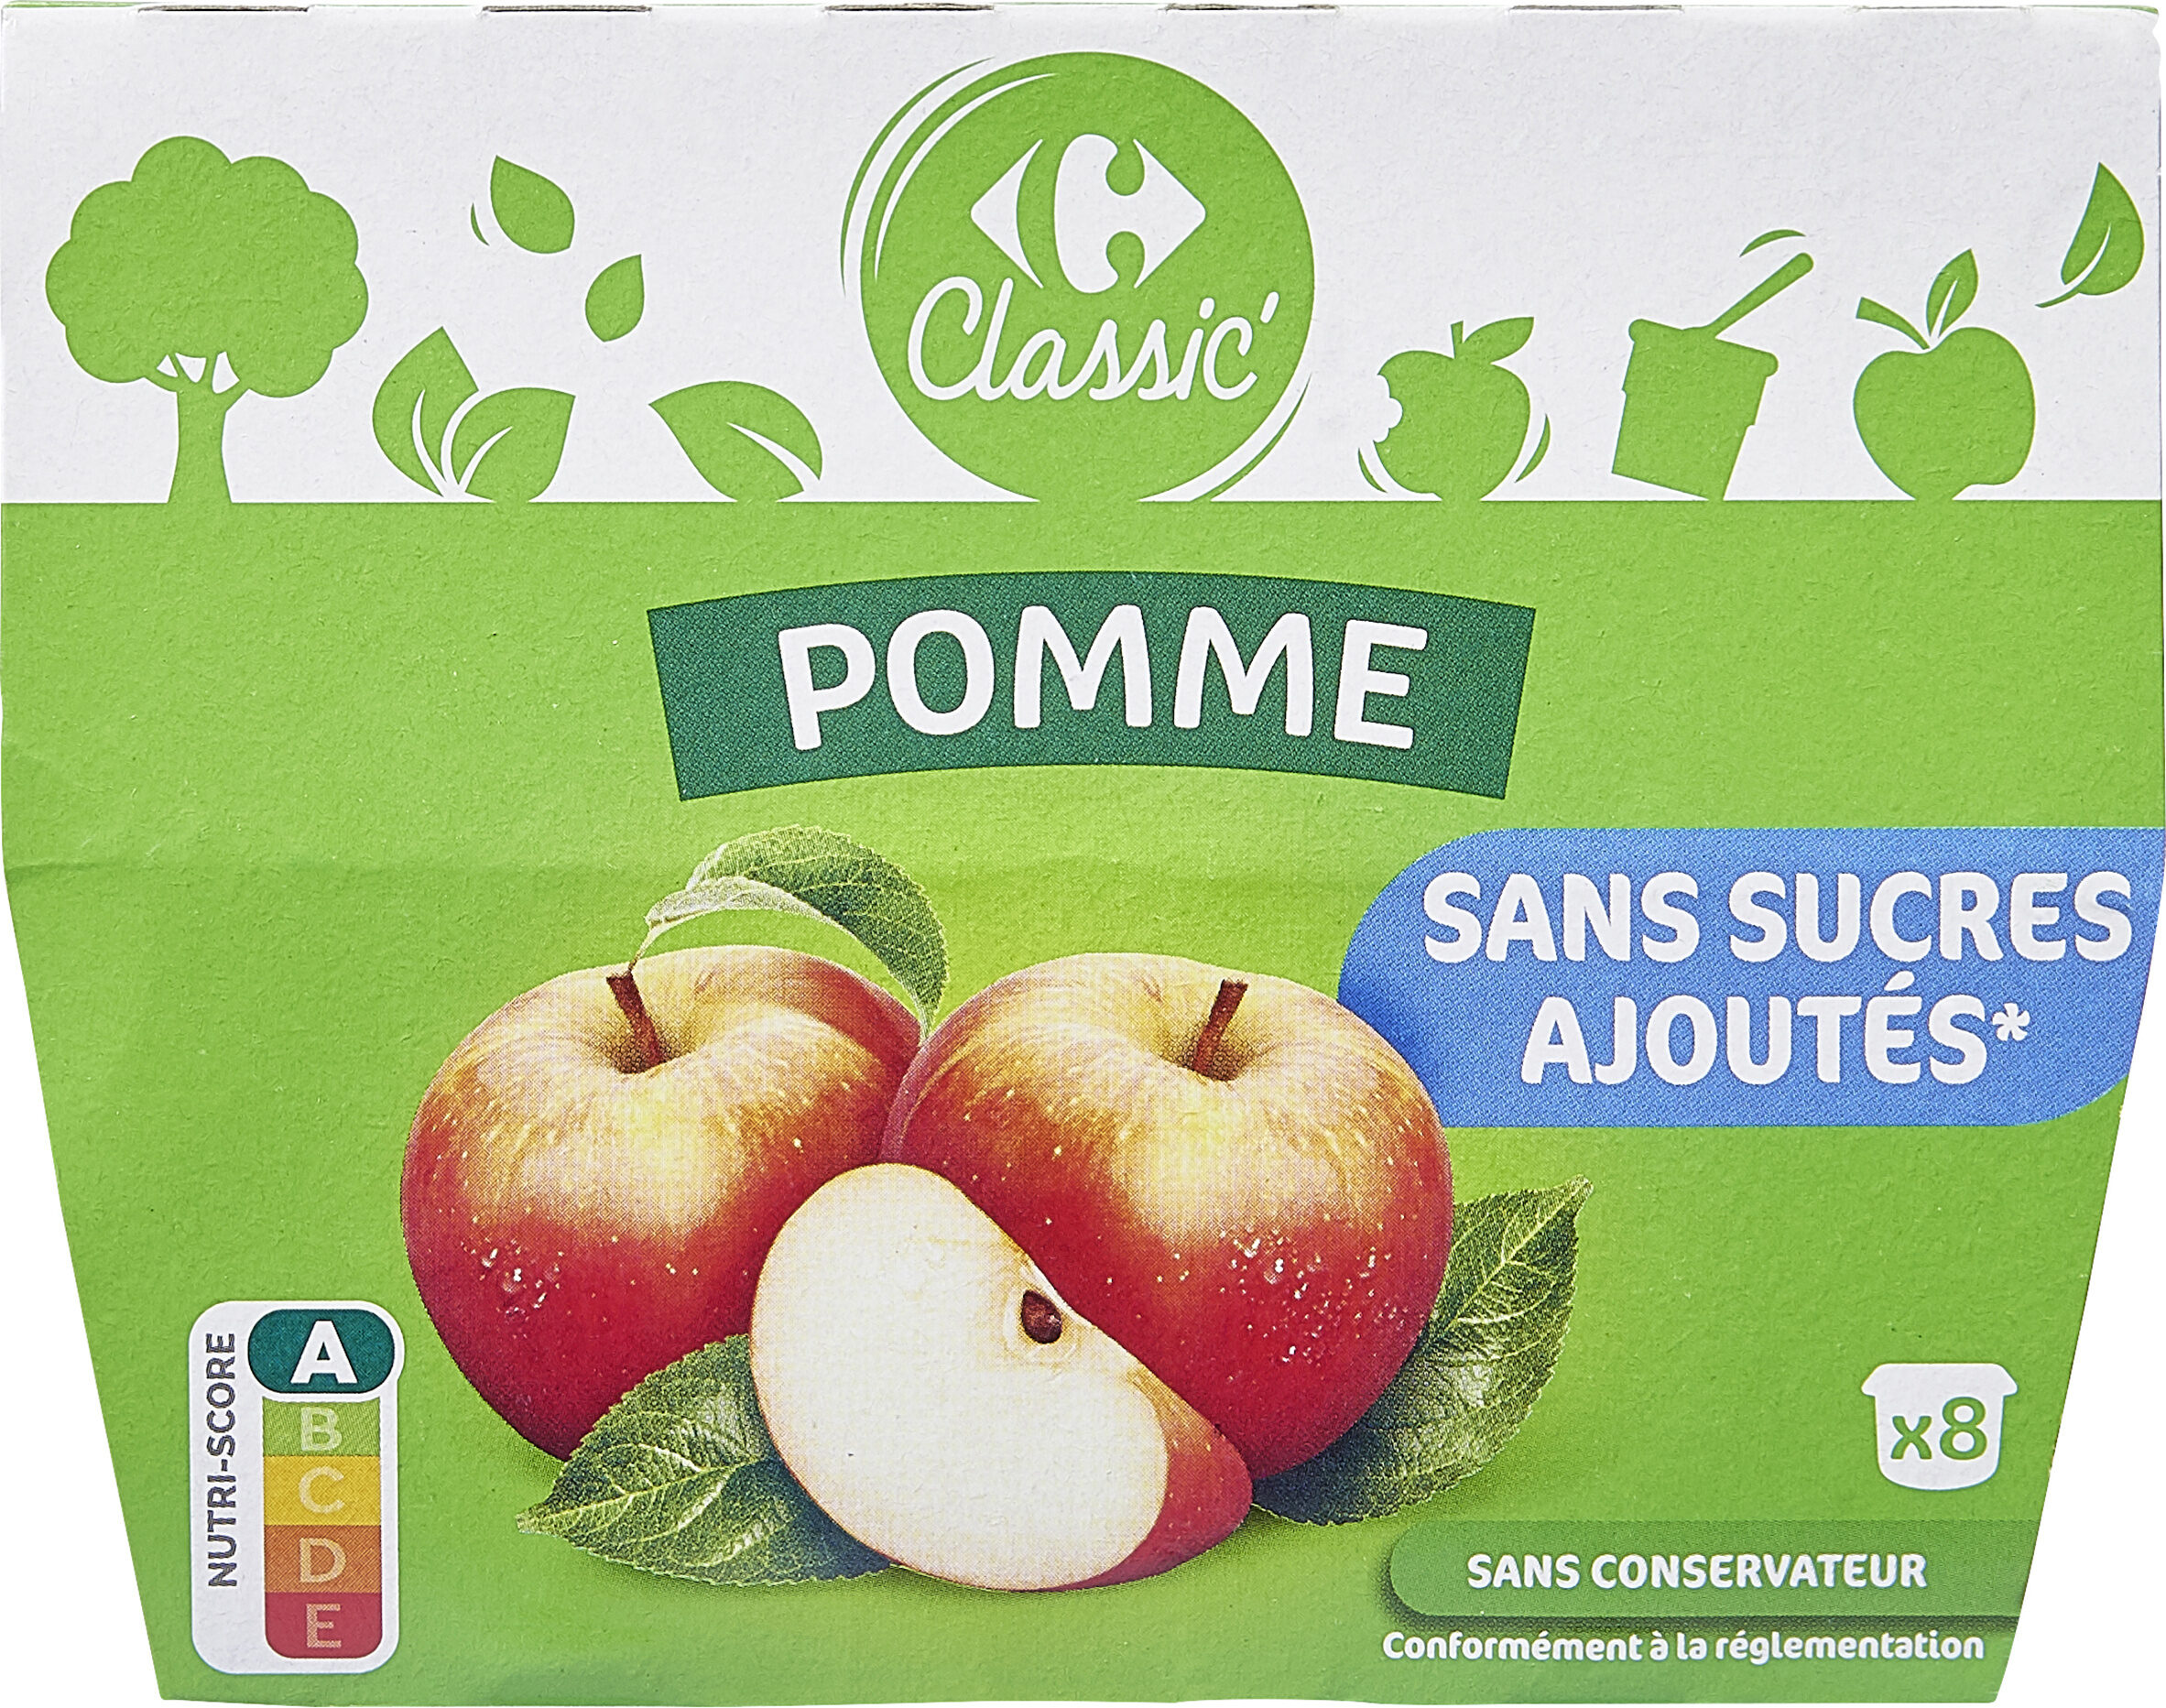 Pomme Sans sucres ajoutés - Product - fr